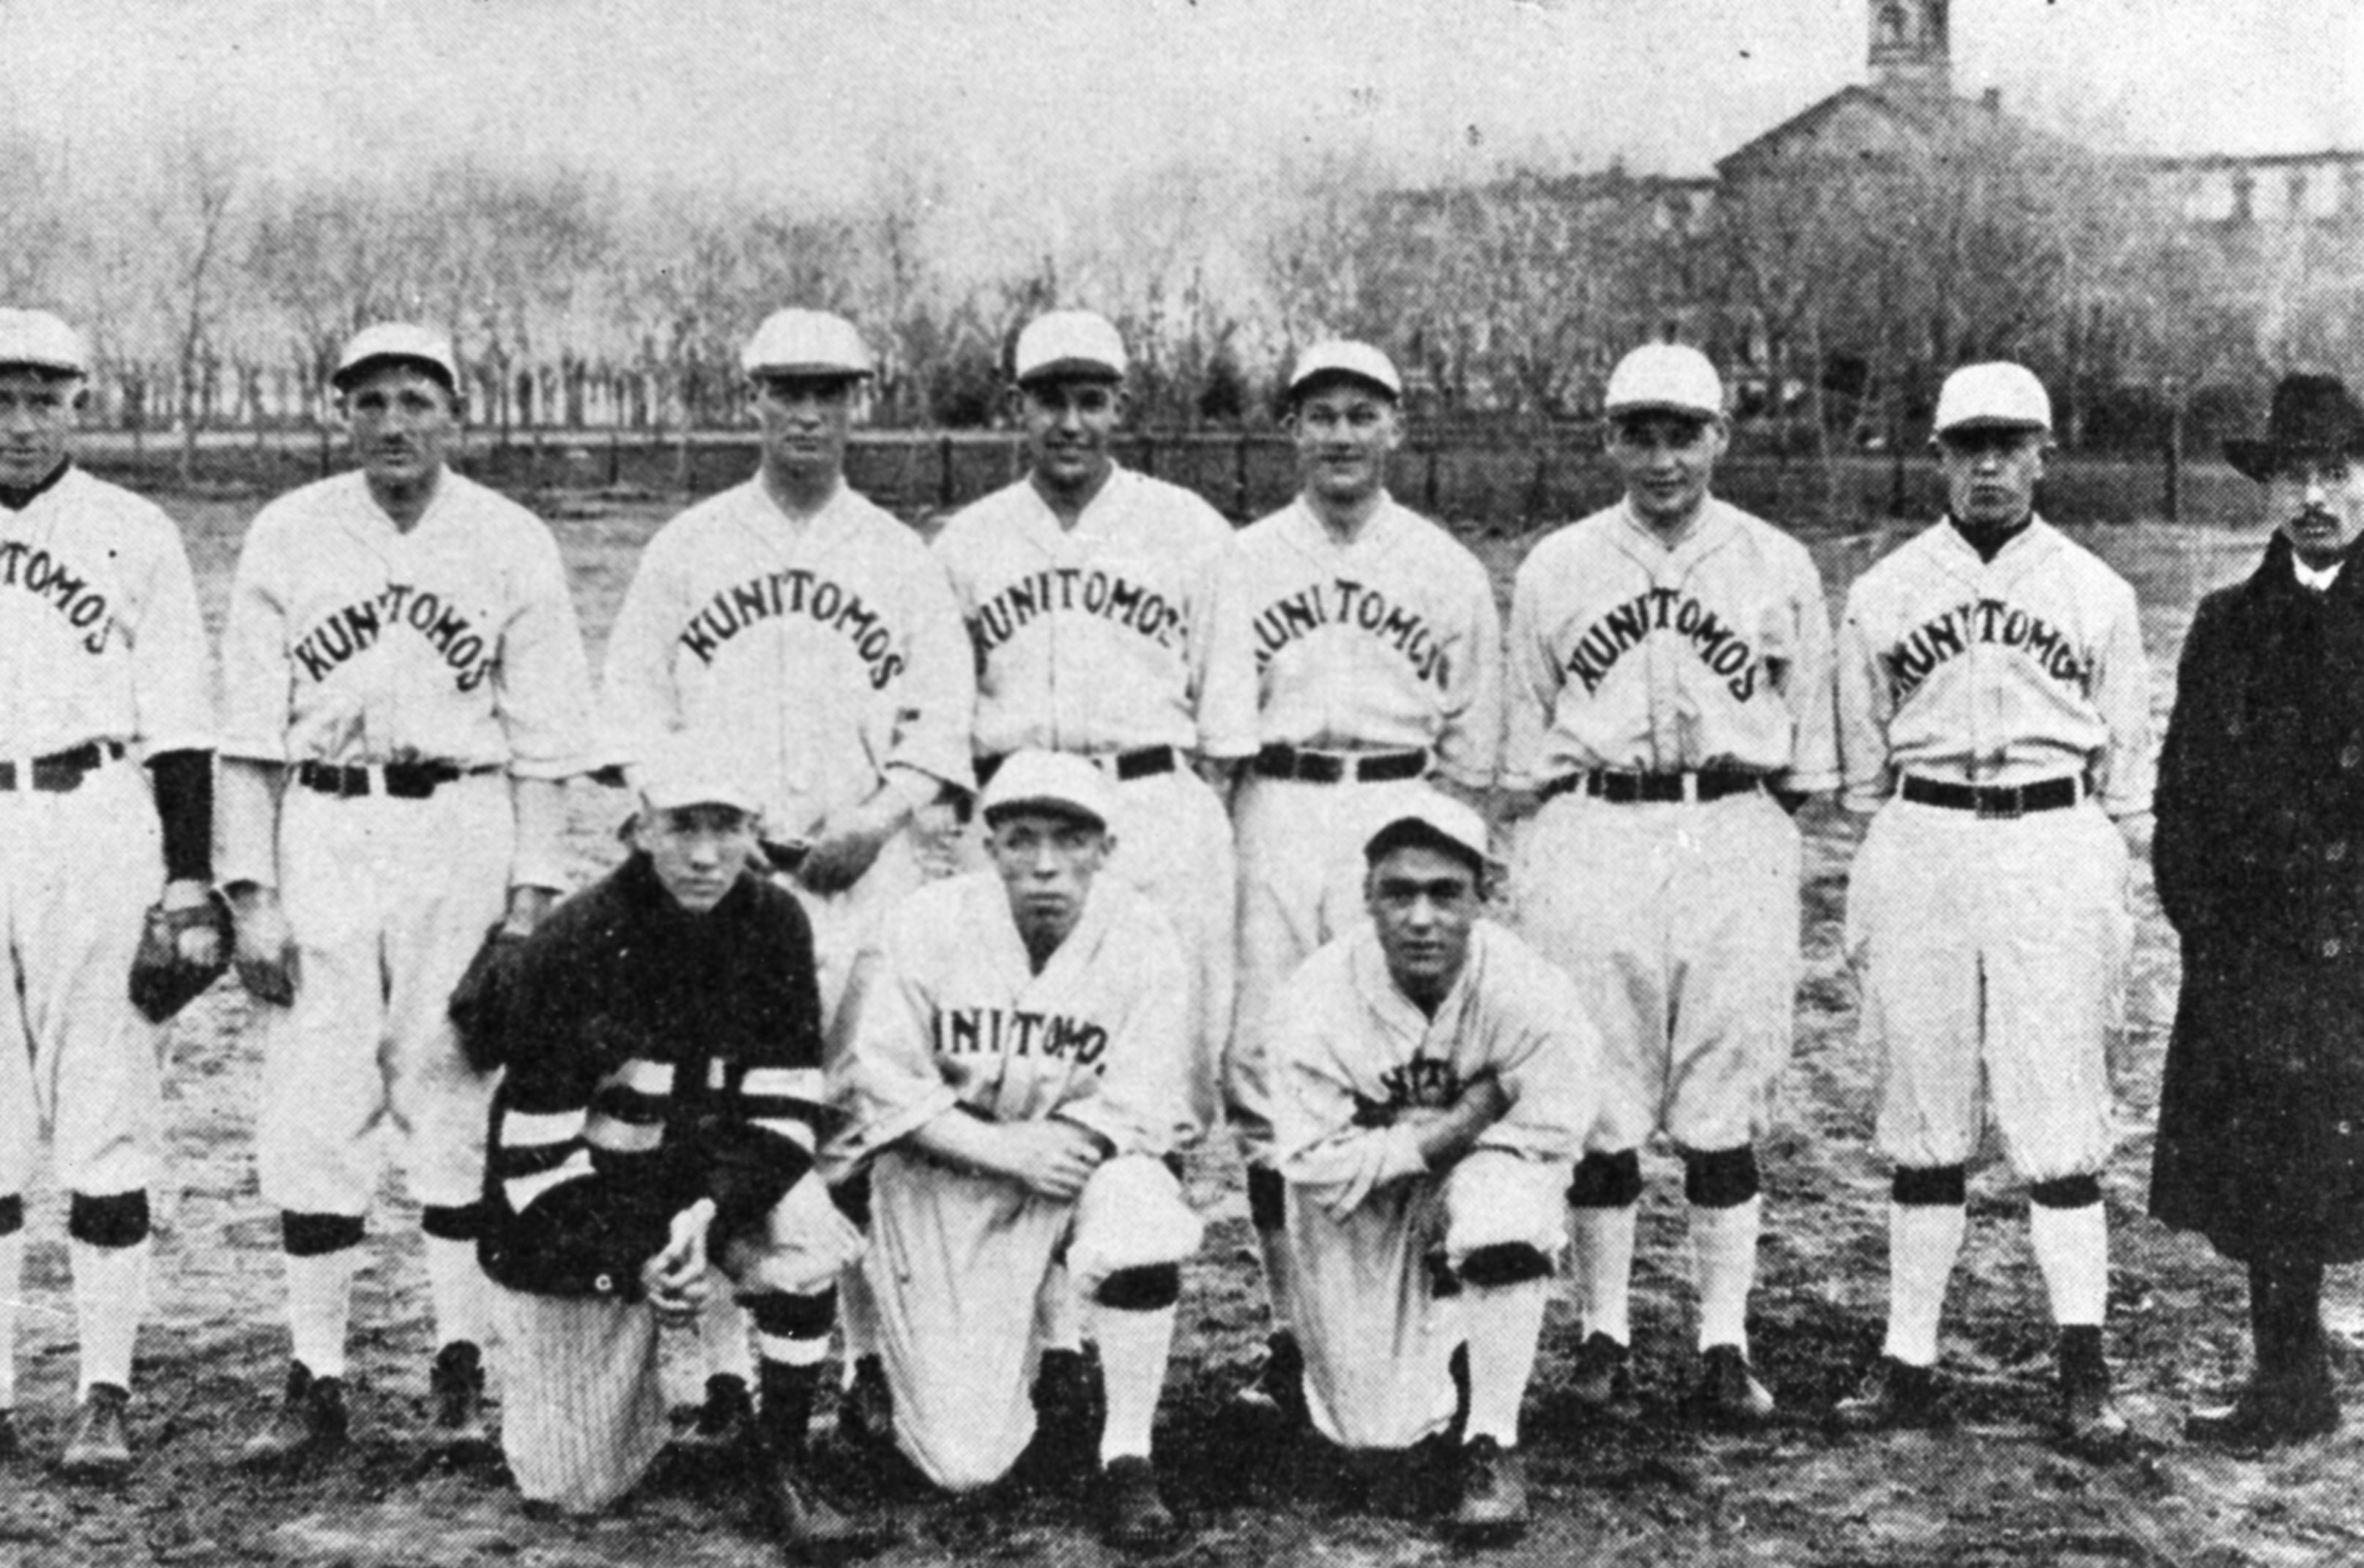 Kunitomos baseball team, Denver, 1920